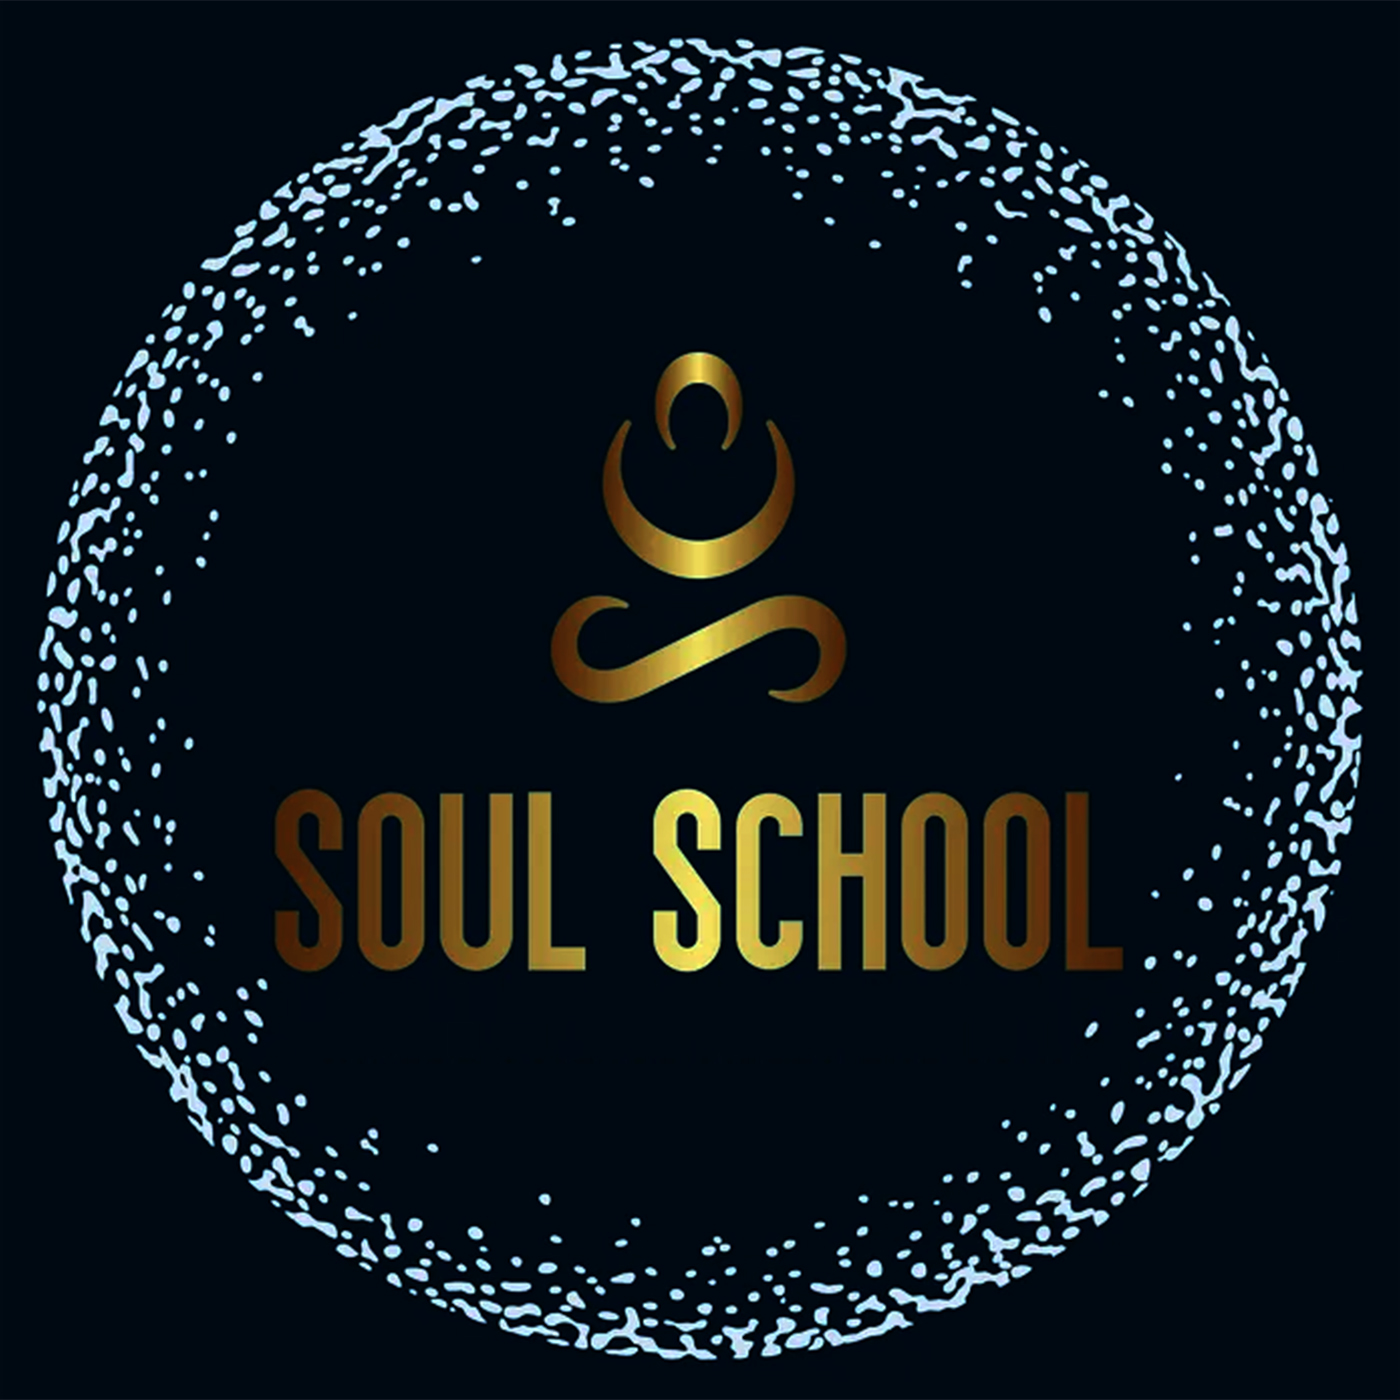 Soul school